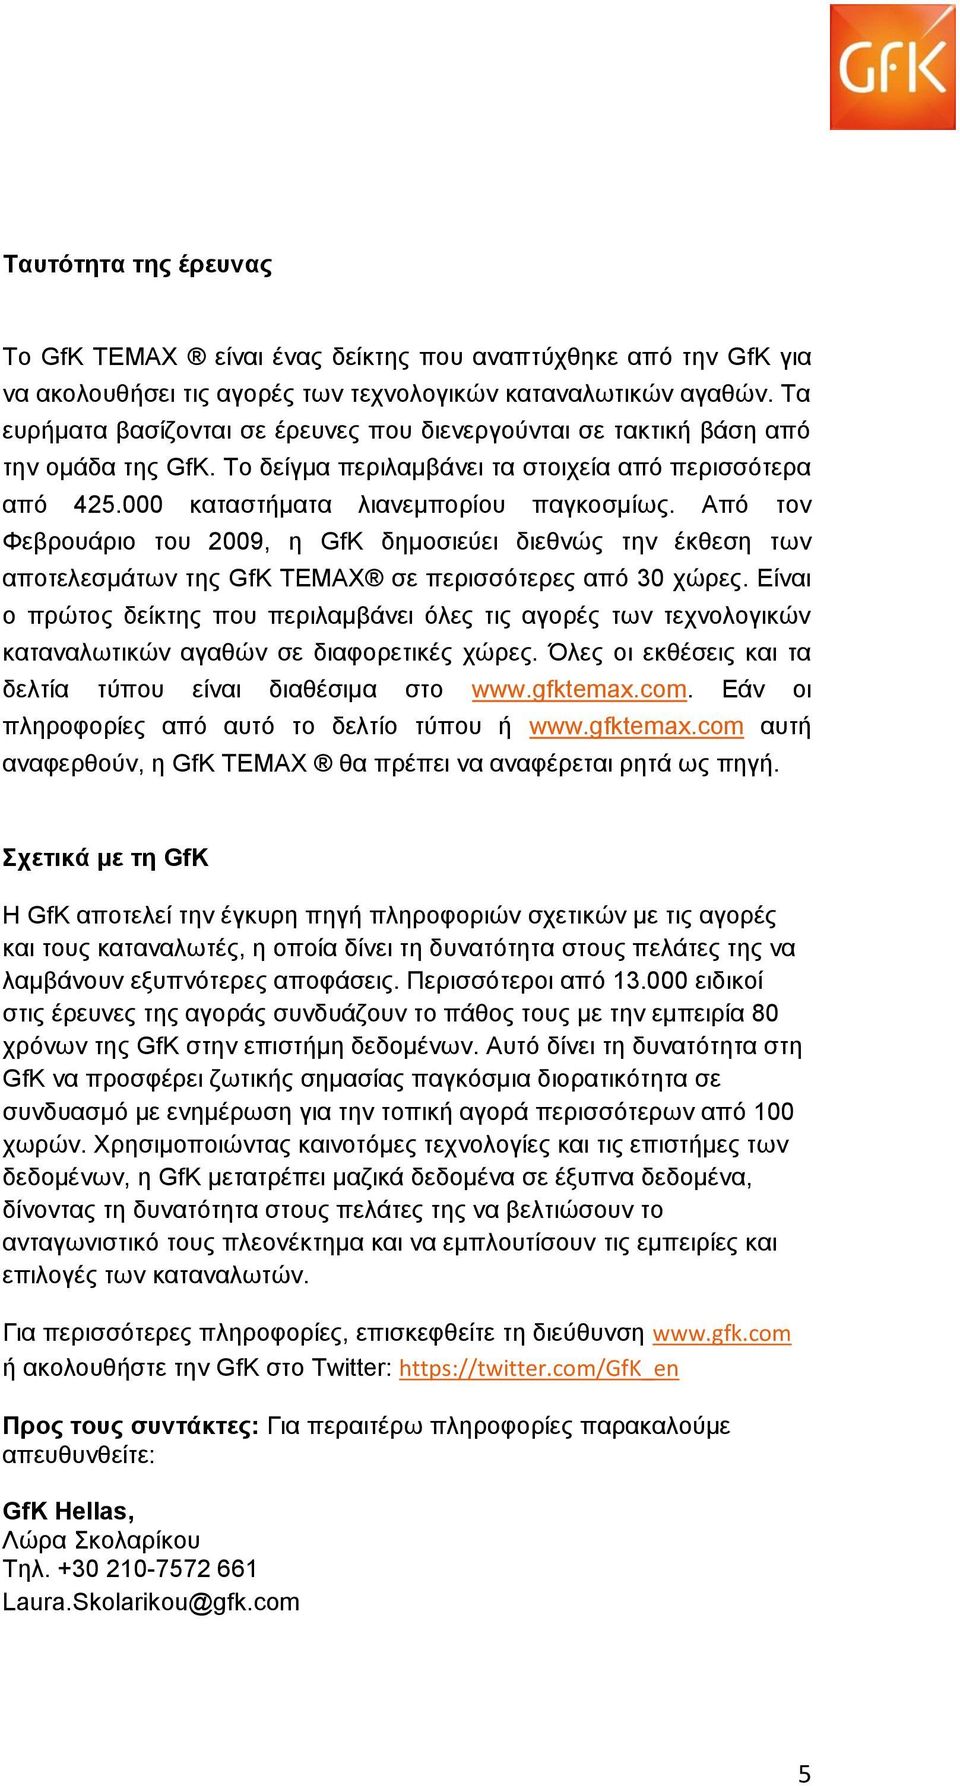 Από τον Φεβρουάριο του 2009, η GfK δημοσιεύει διεθνώς την έκθεση των αποτελεσμάτων της GfK TEMAX σε περισσότερες από 30 χώρες.